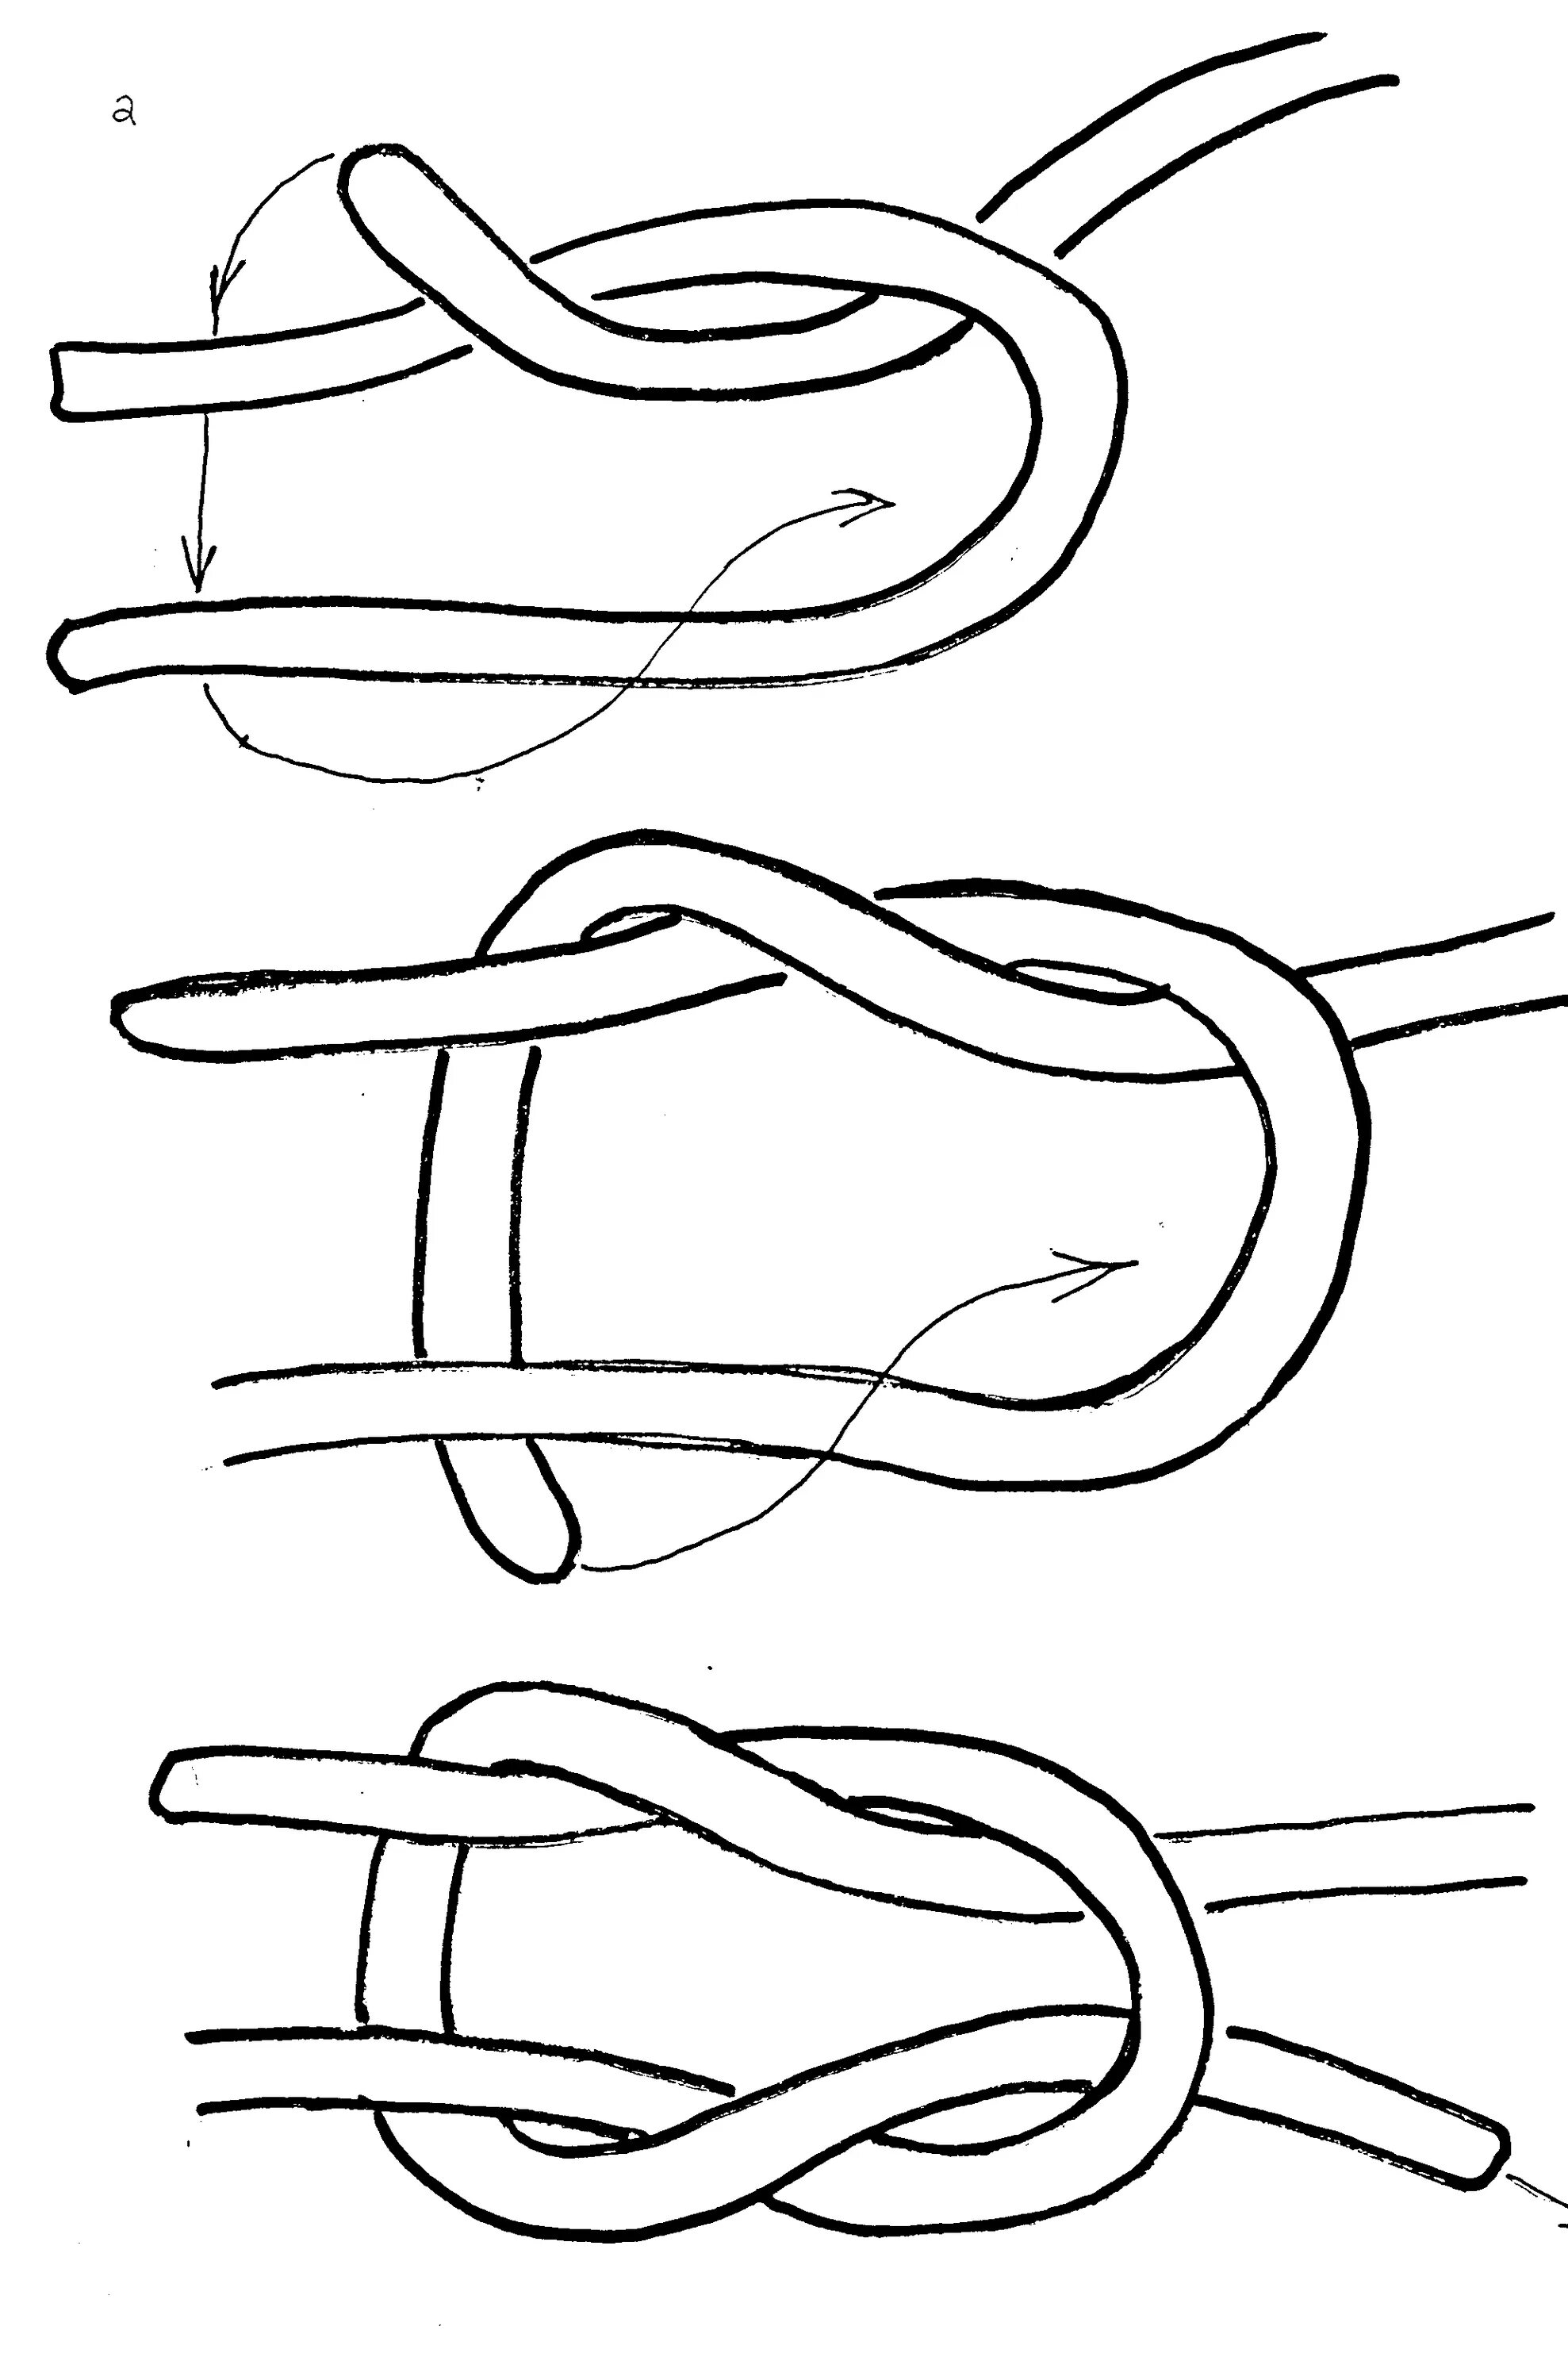 Завязка узлов. Схема завязывания морского узла. Фламандский узел схема. Как завязывать морской узел схема. Узел восьмерка швартовка.